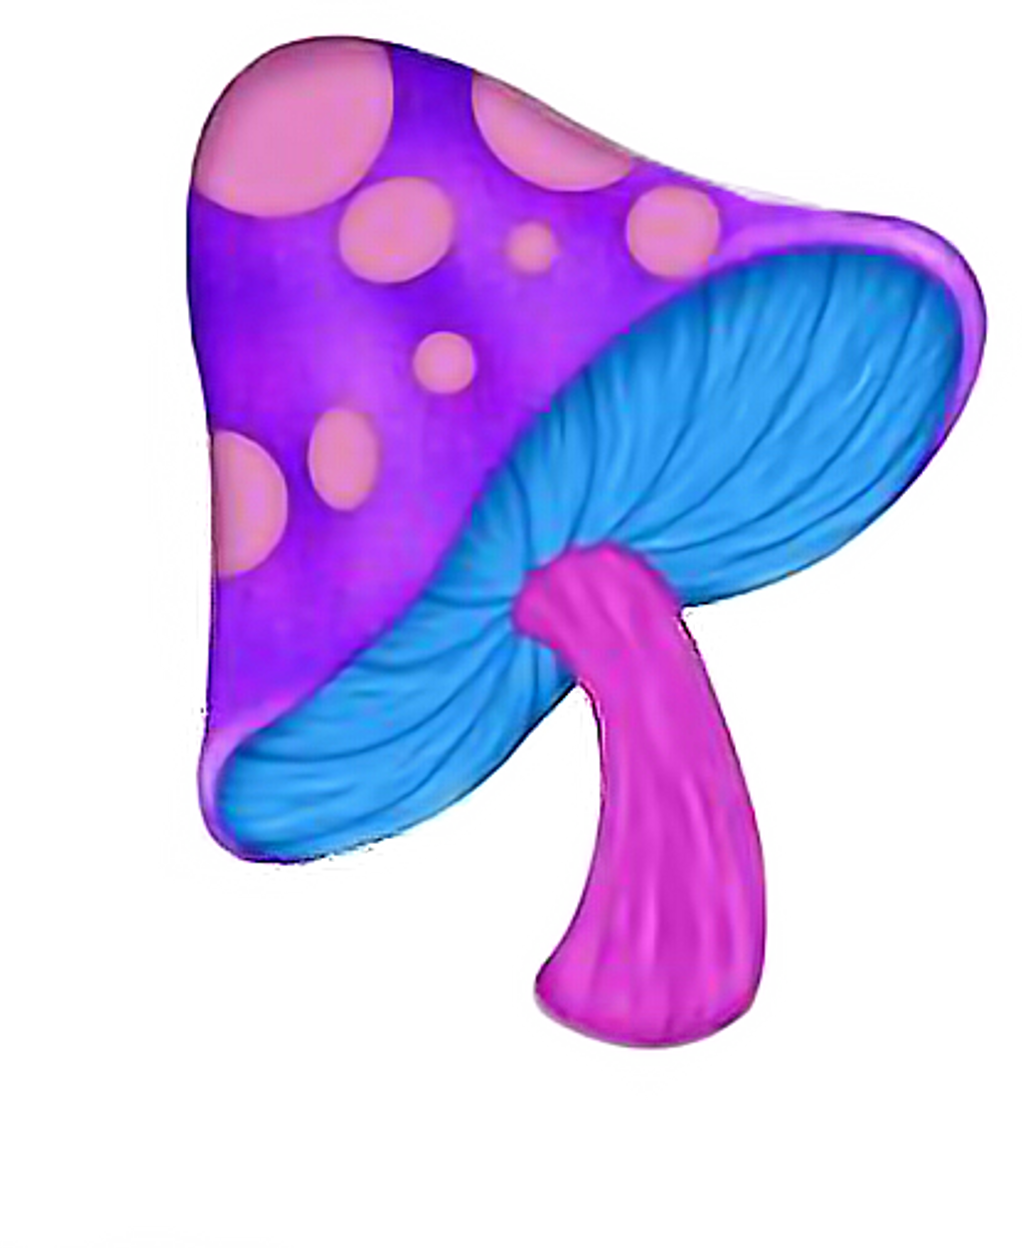 Cartoony image of giant purple mushroom